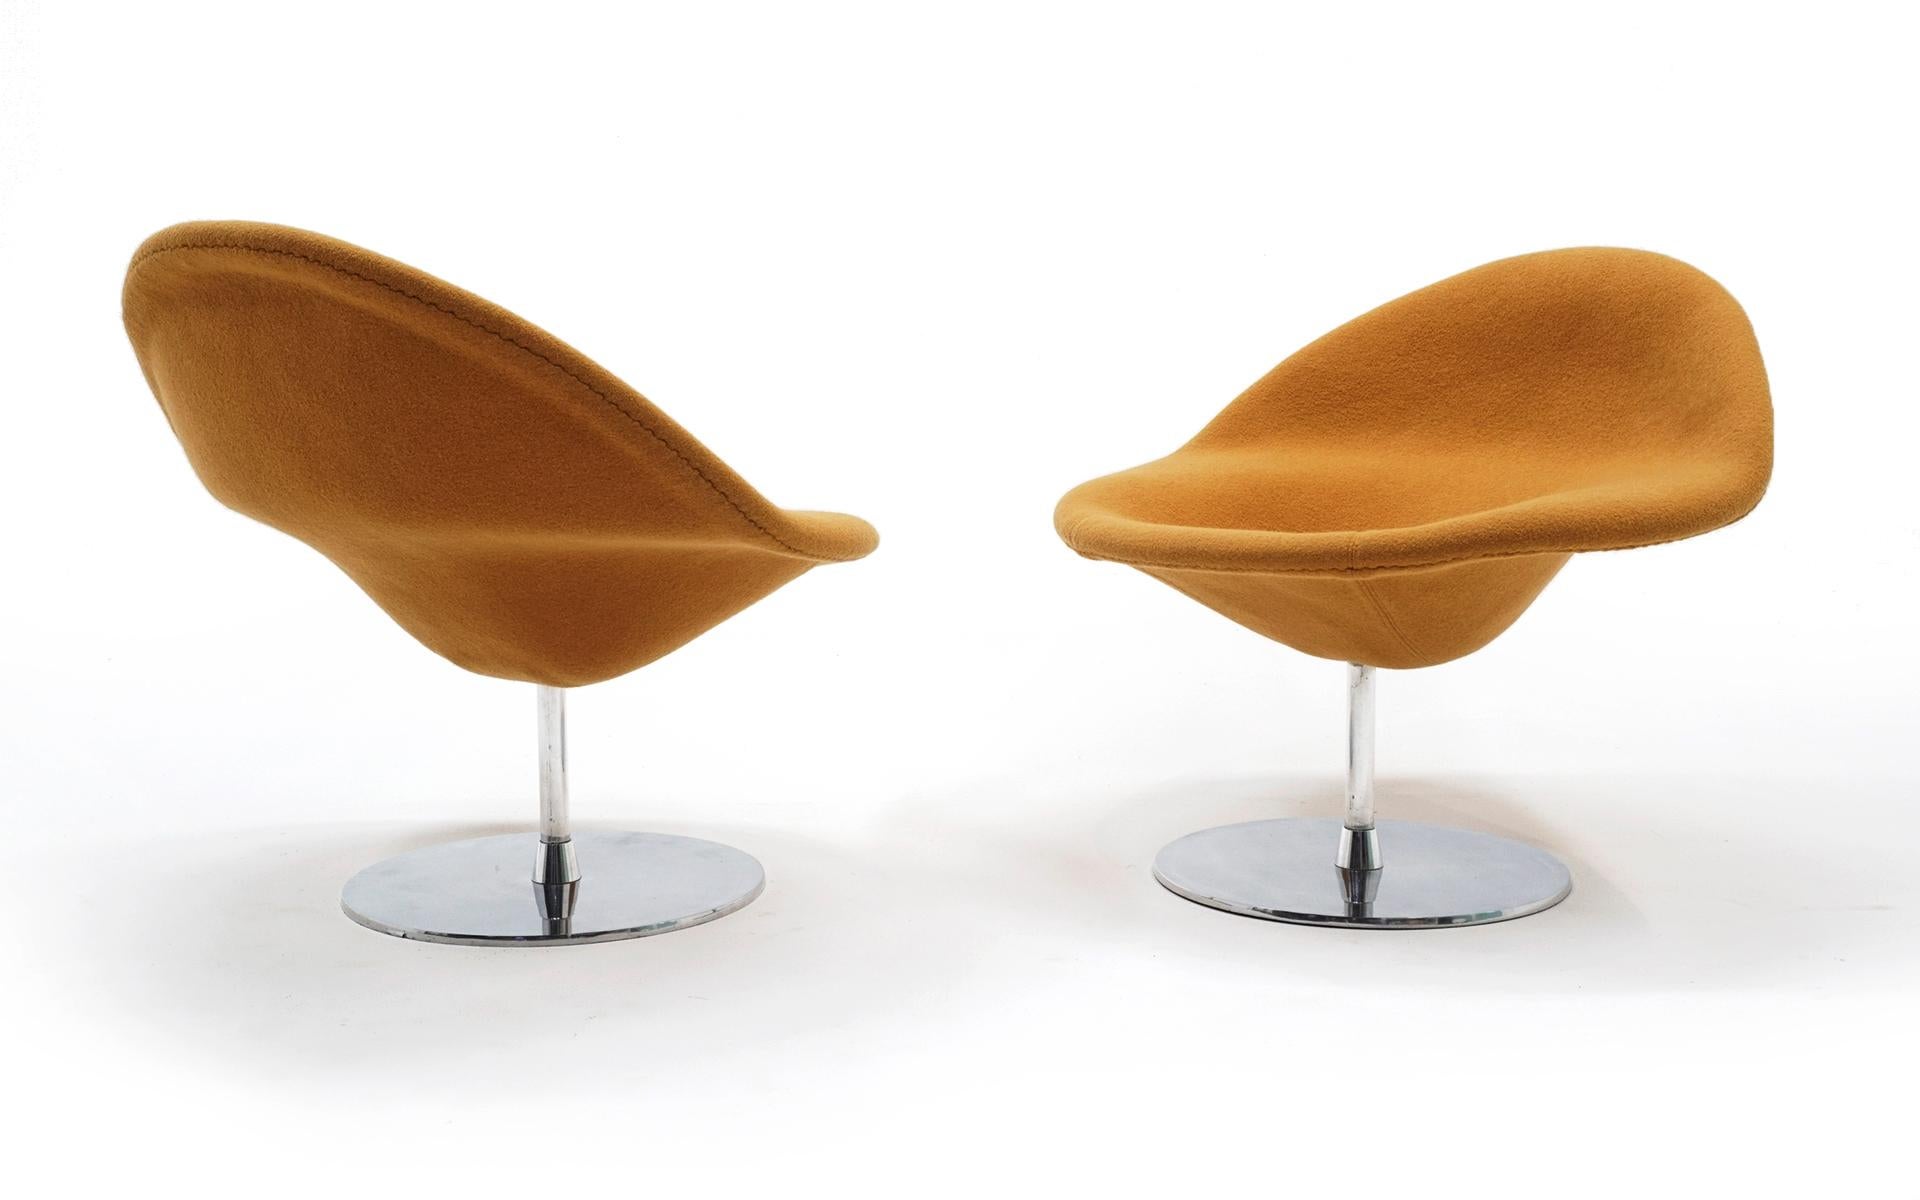 Paire de chaises longues Pierre Paulin modèle 421 fabriquées par Artifort, vers 1970. Les deux chaises sont en très bon état et prêtes à être utilisées. Le mécanisme de pivotement fonctionne parfaitement. De rares et beaux exemples de ce modèle.